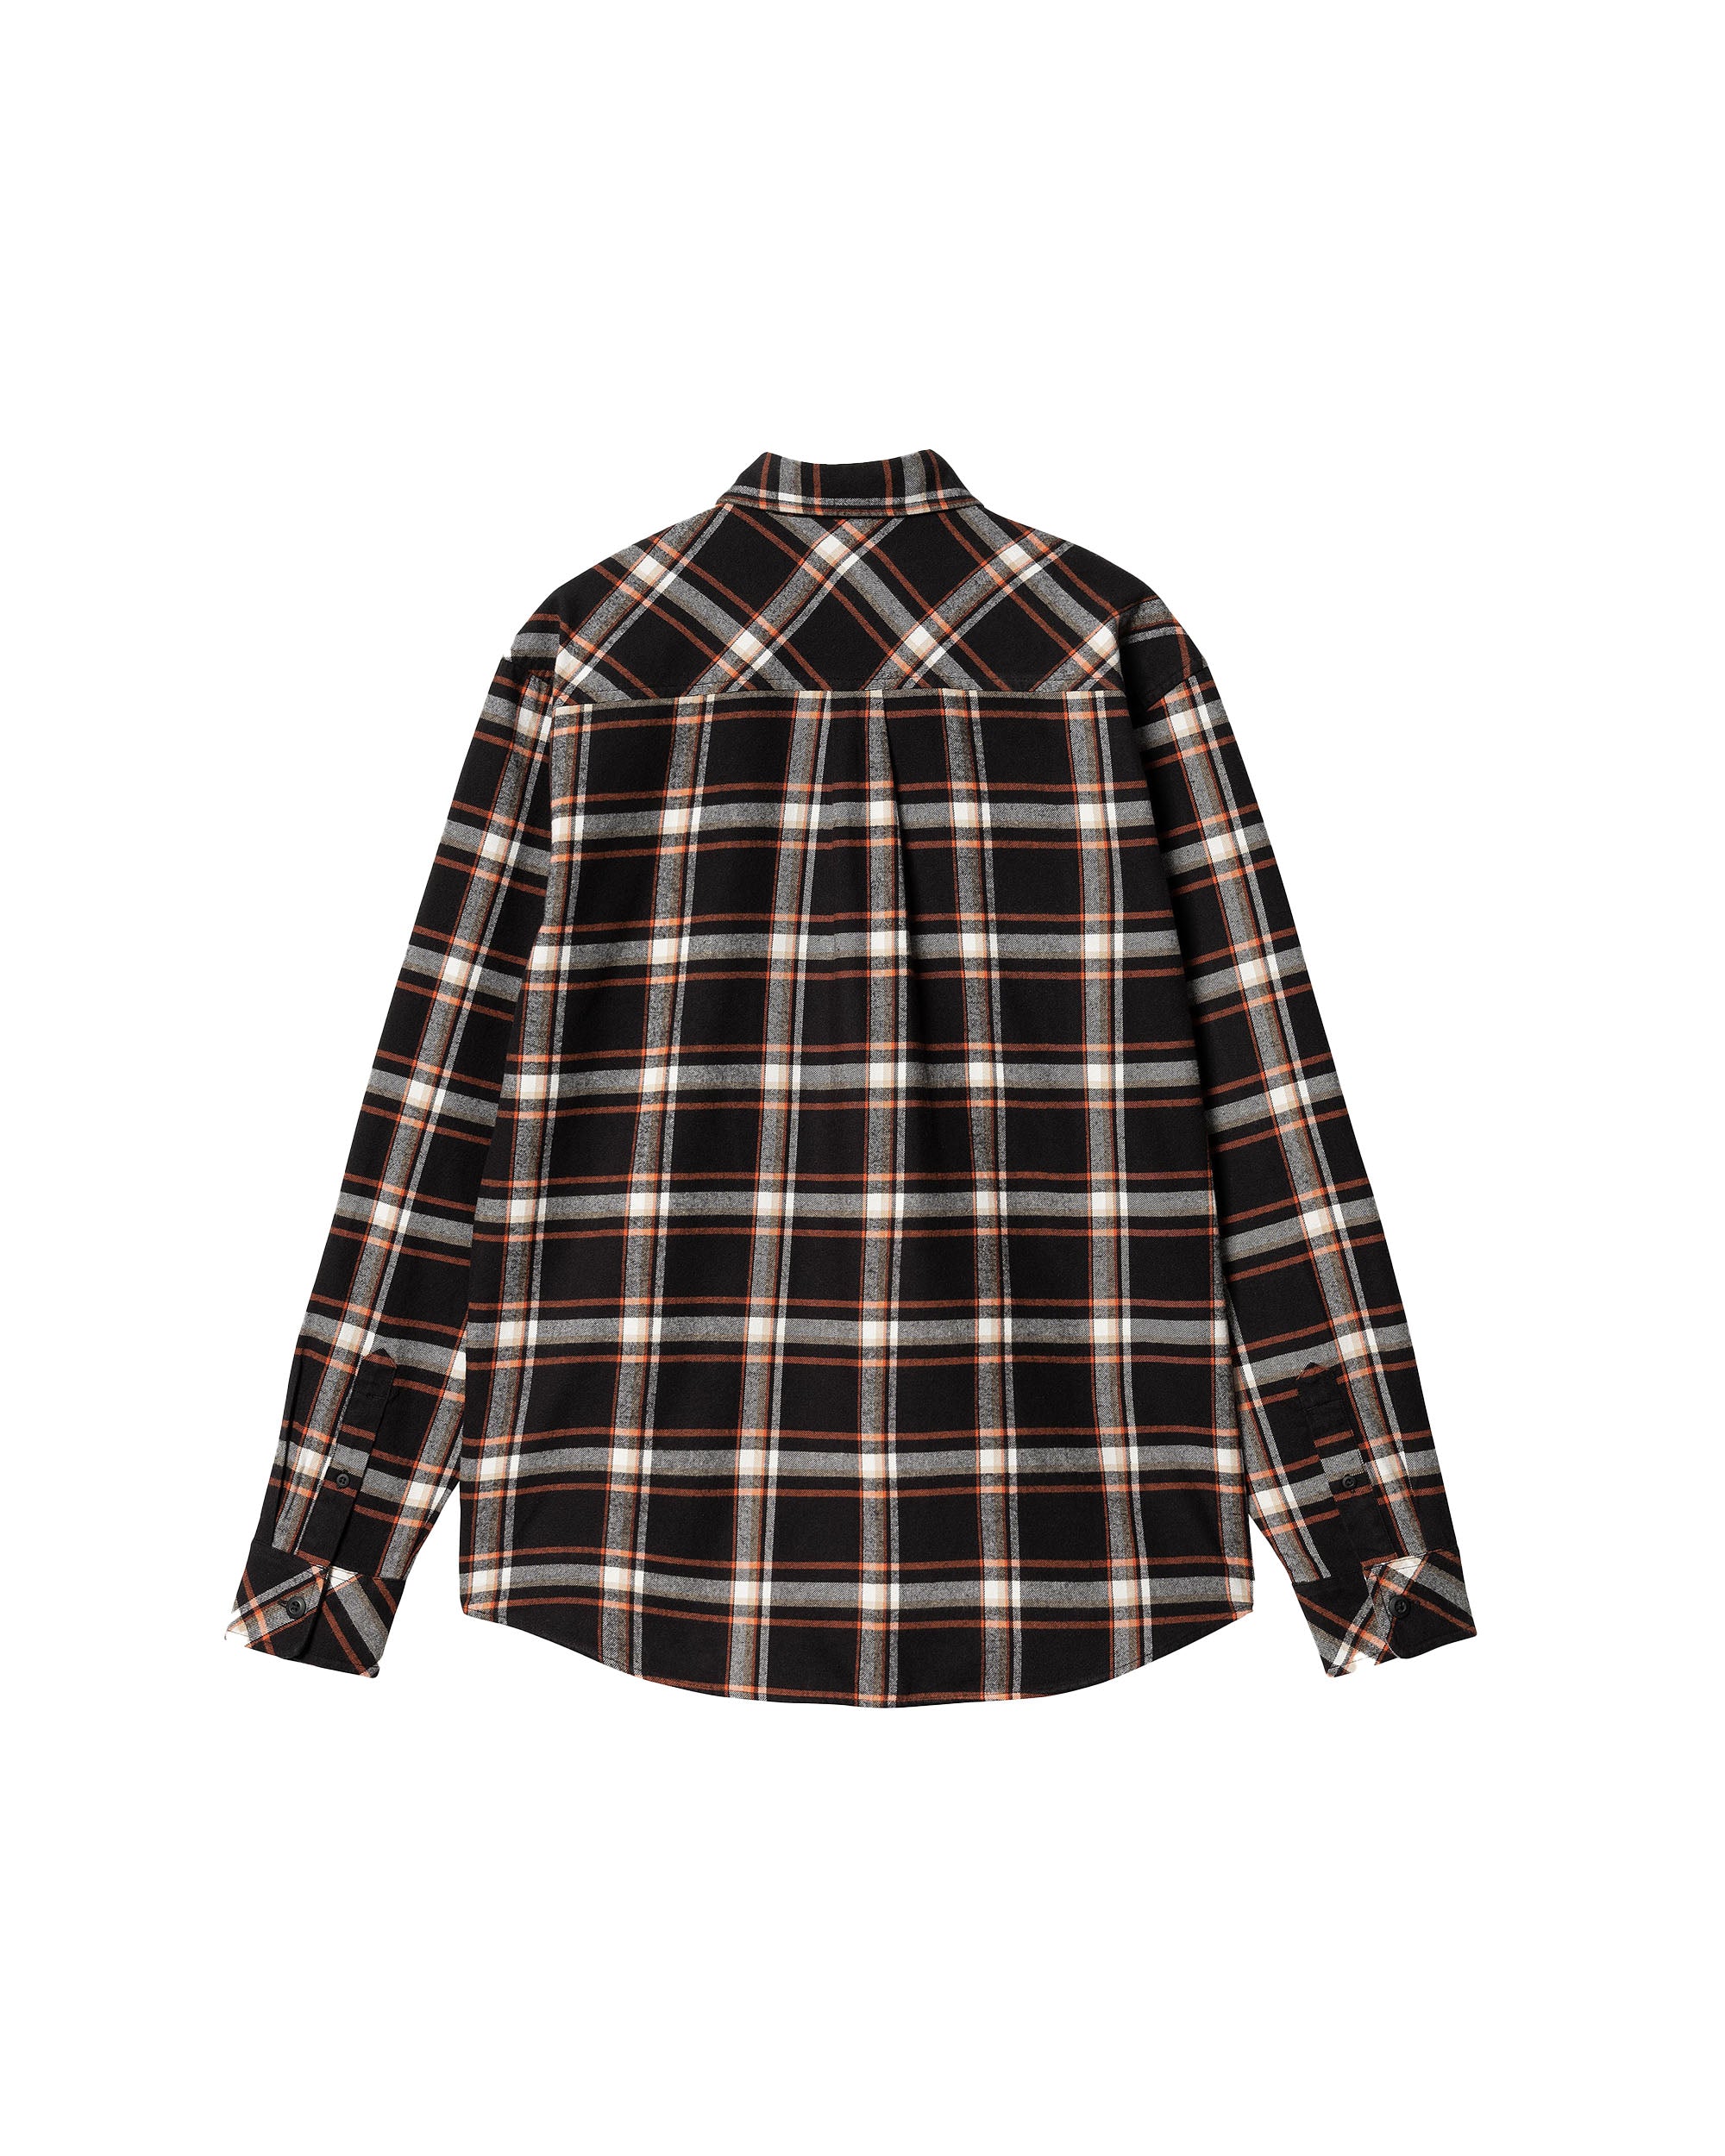 L/S Barten Shirt - Barten Check / Black